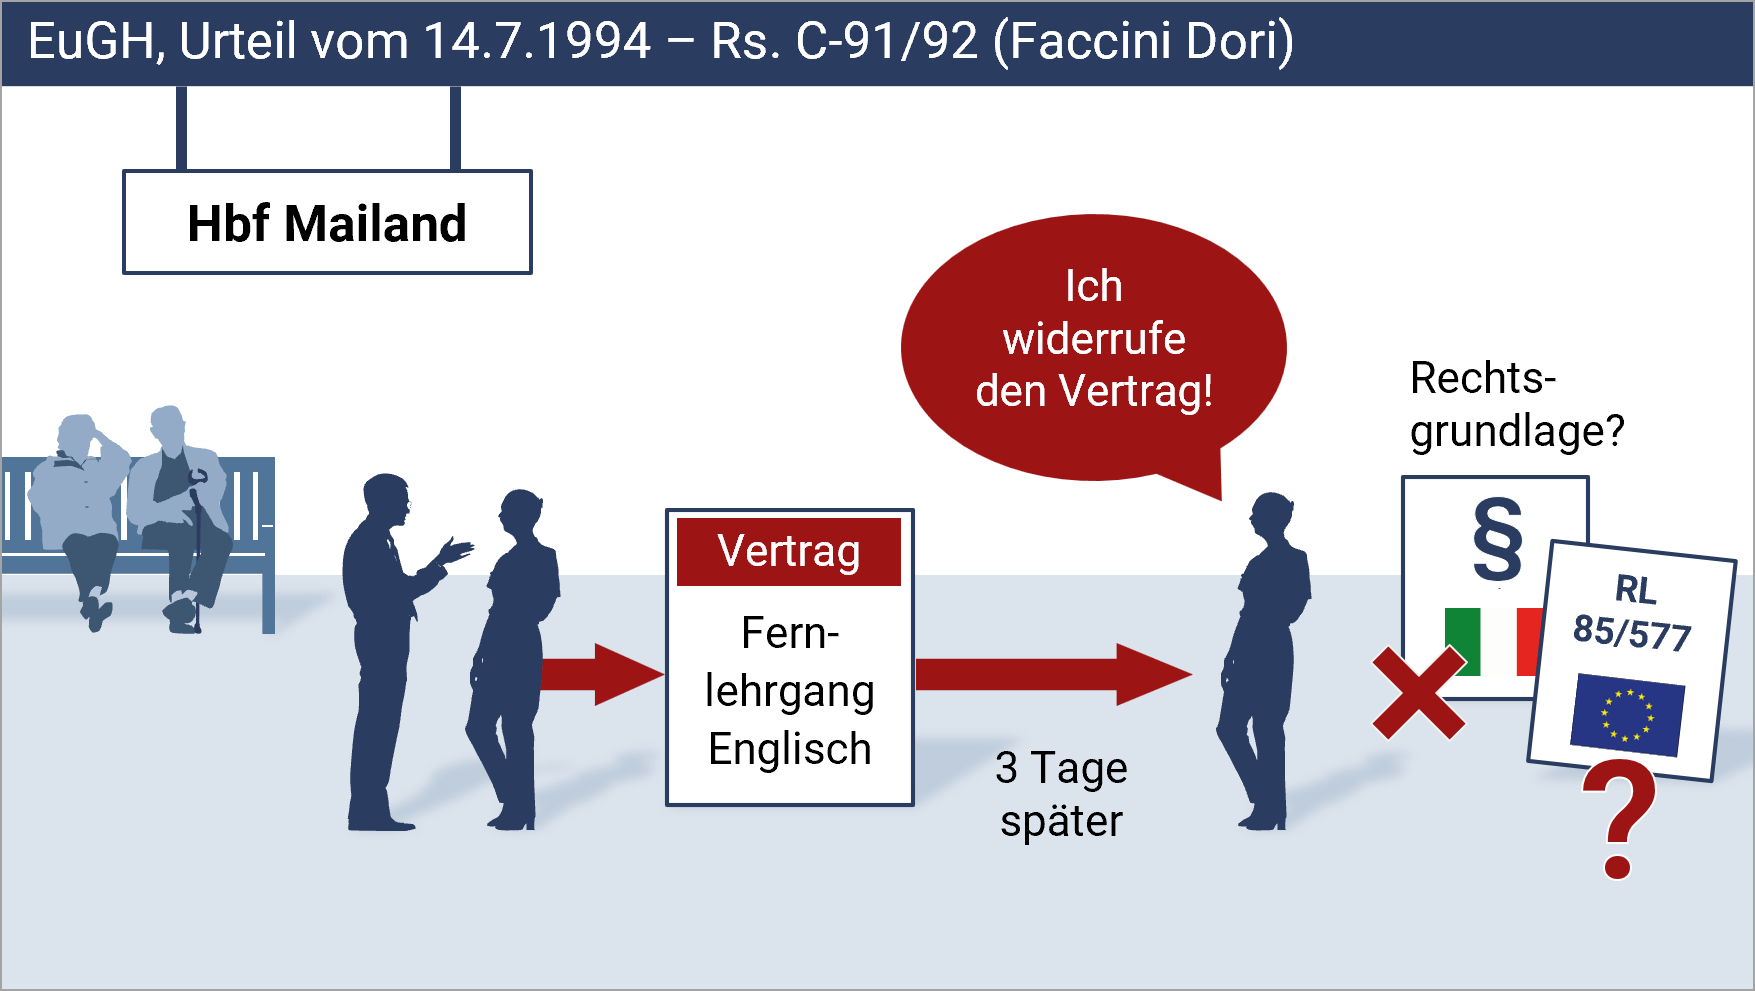 Sachverhaltsskizze zum EuGH-Urteil Rs. C-91/92 vom 14.7.1994, die den textlich beschriebenen Sachverhalt  als Szene auf dem Bahnsteig am Hbf Mailand visualisiert.